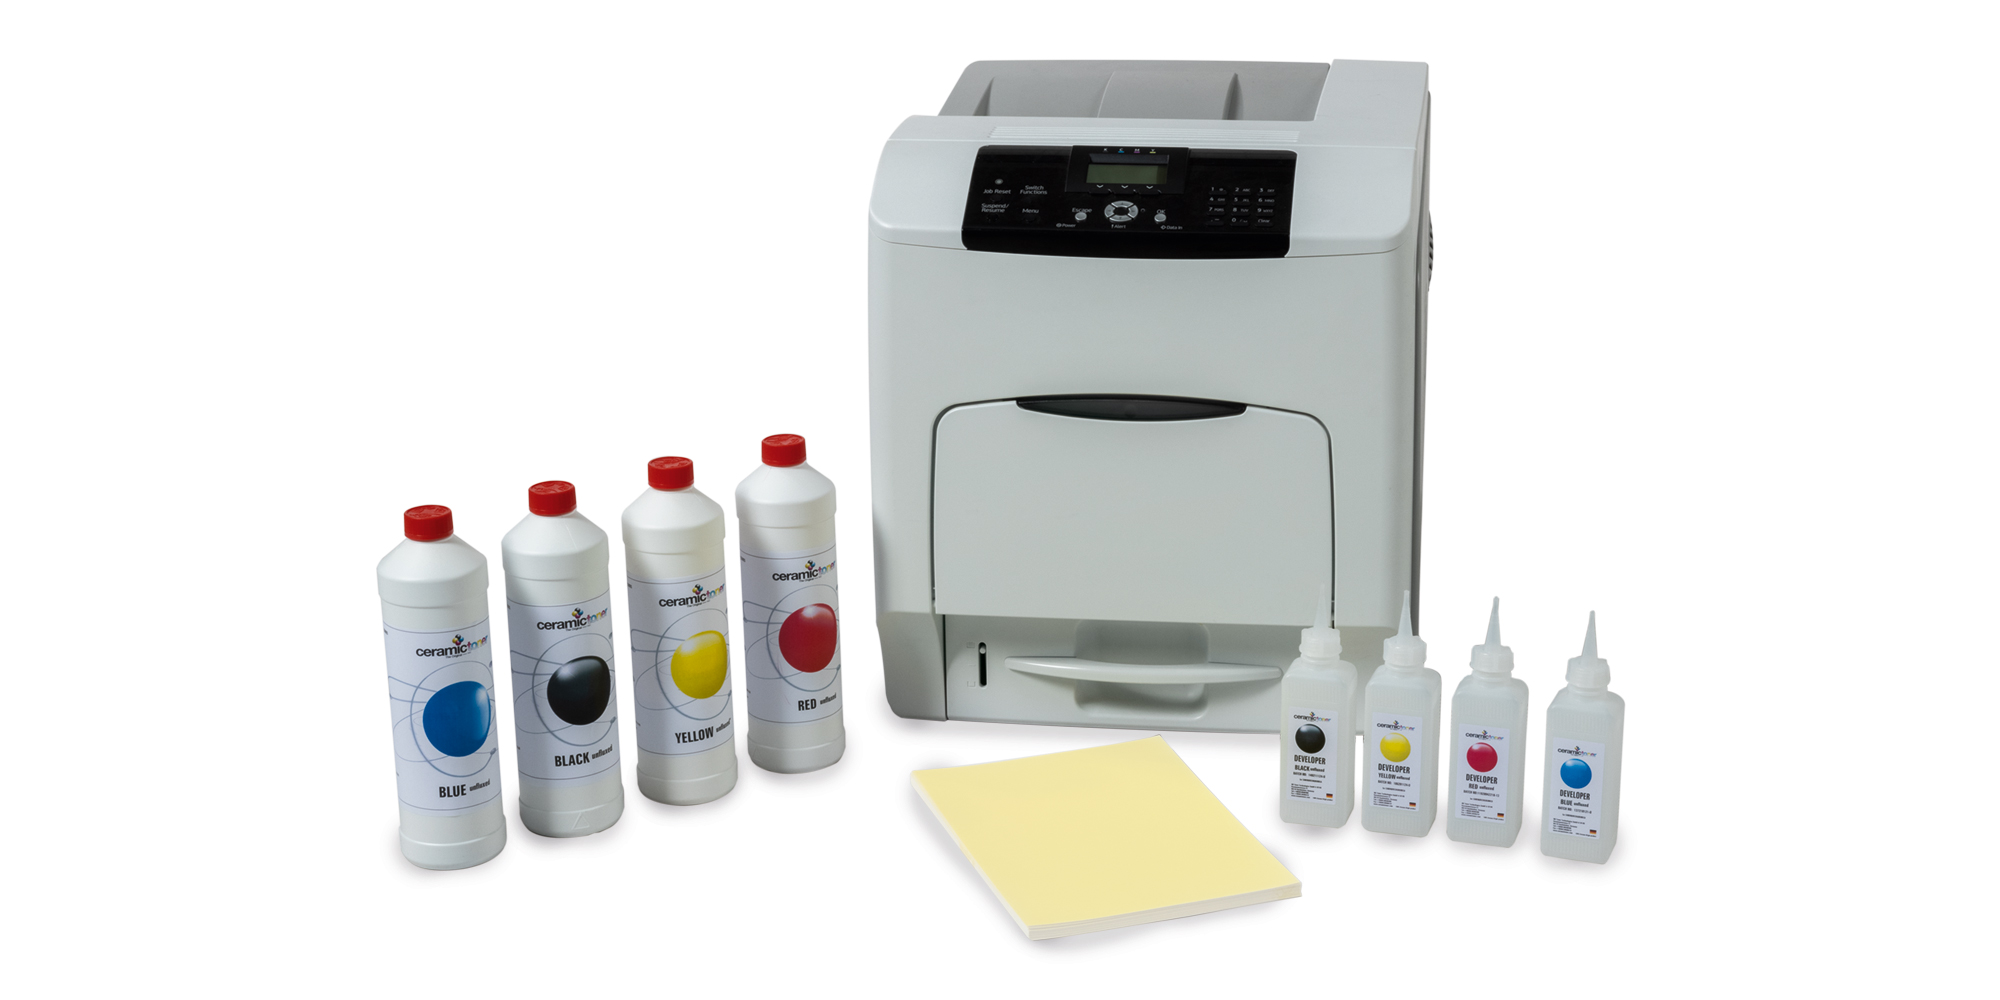 L'immagine mostra una stampante laser per ceramica in grado di stampare decalcomanie in ceramica, chiamate anche wet decals. Il set comprende anche un set di toner, carta per stampa diretta e sviluppatore.